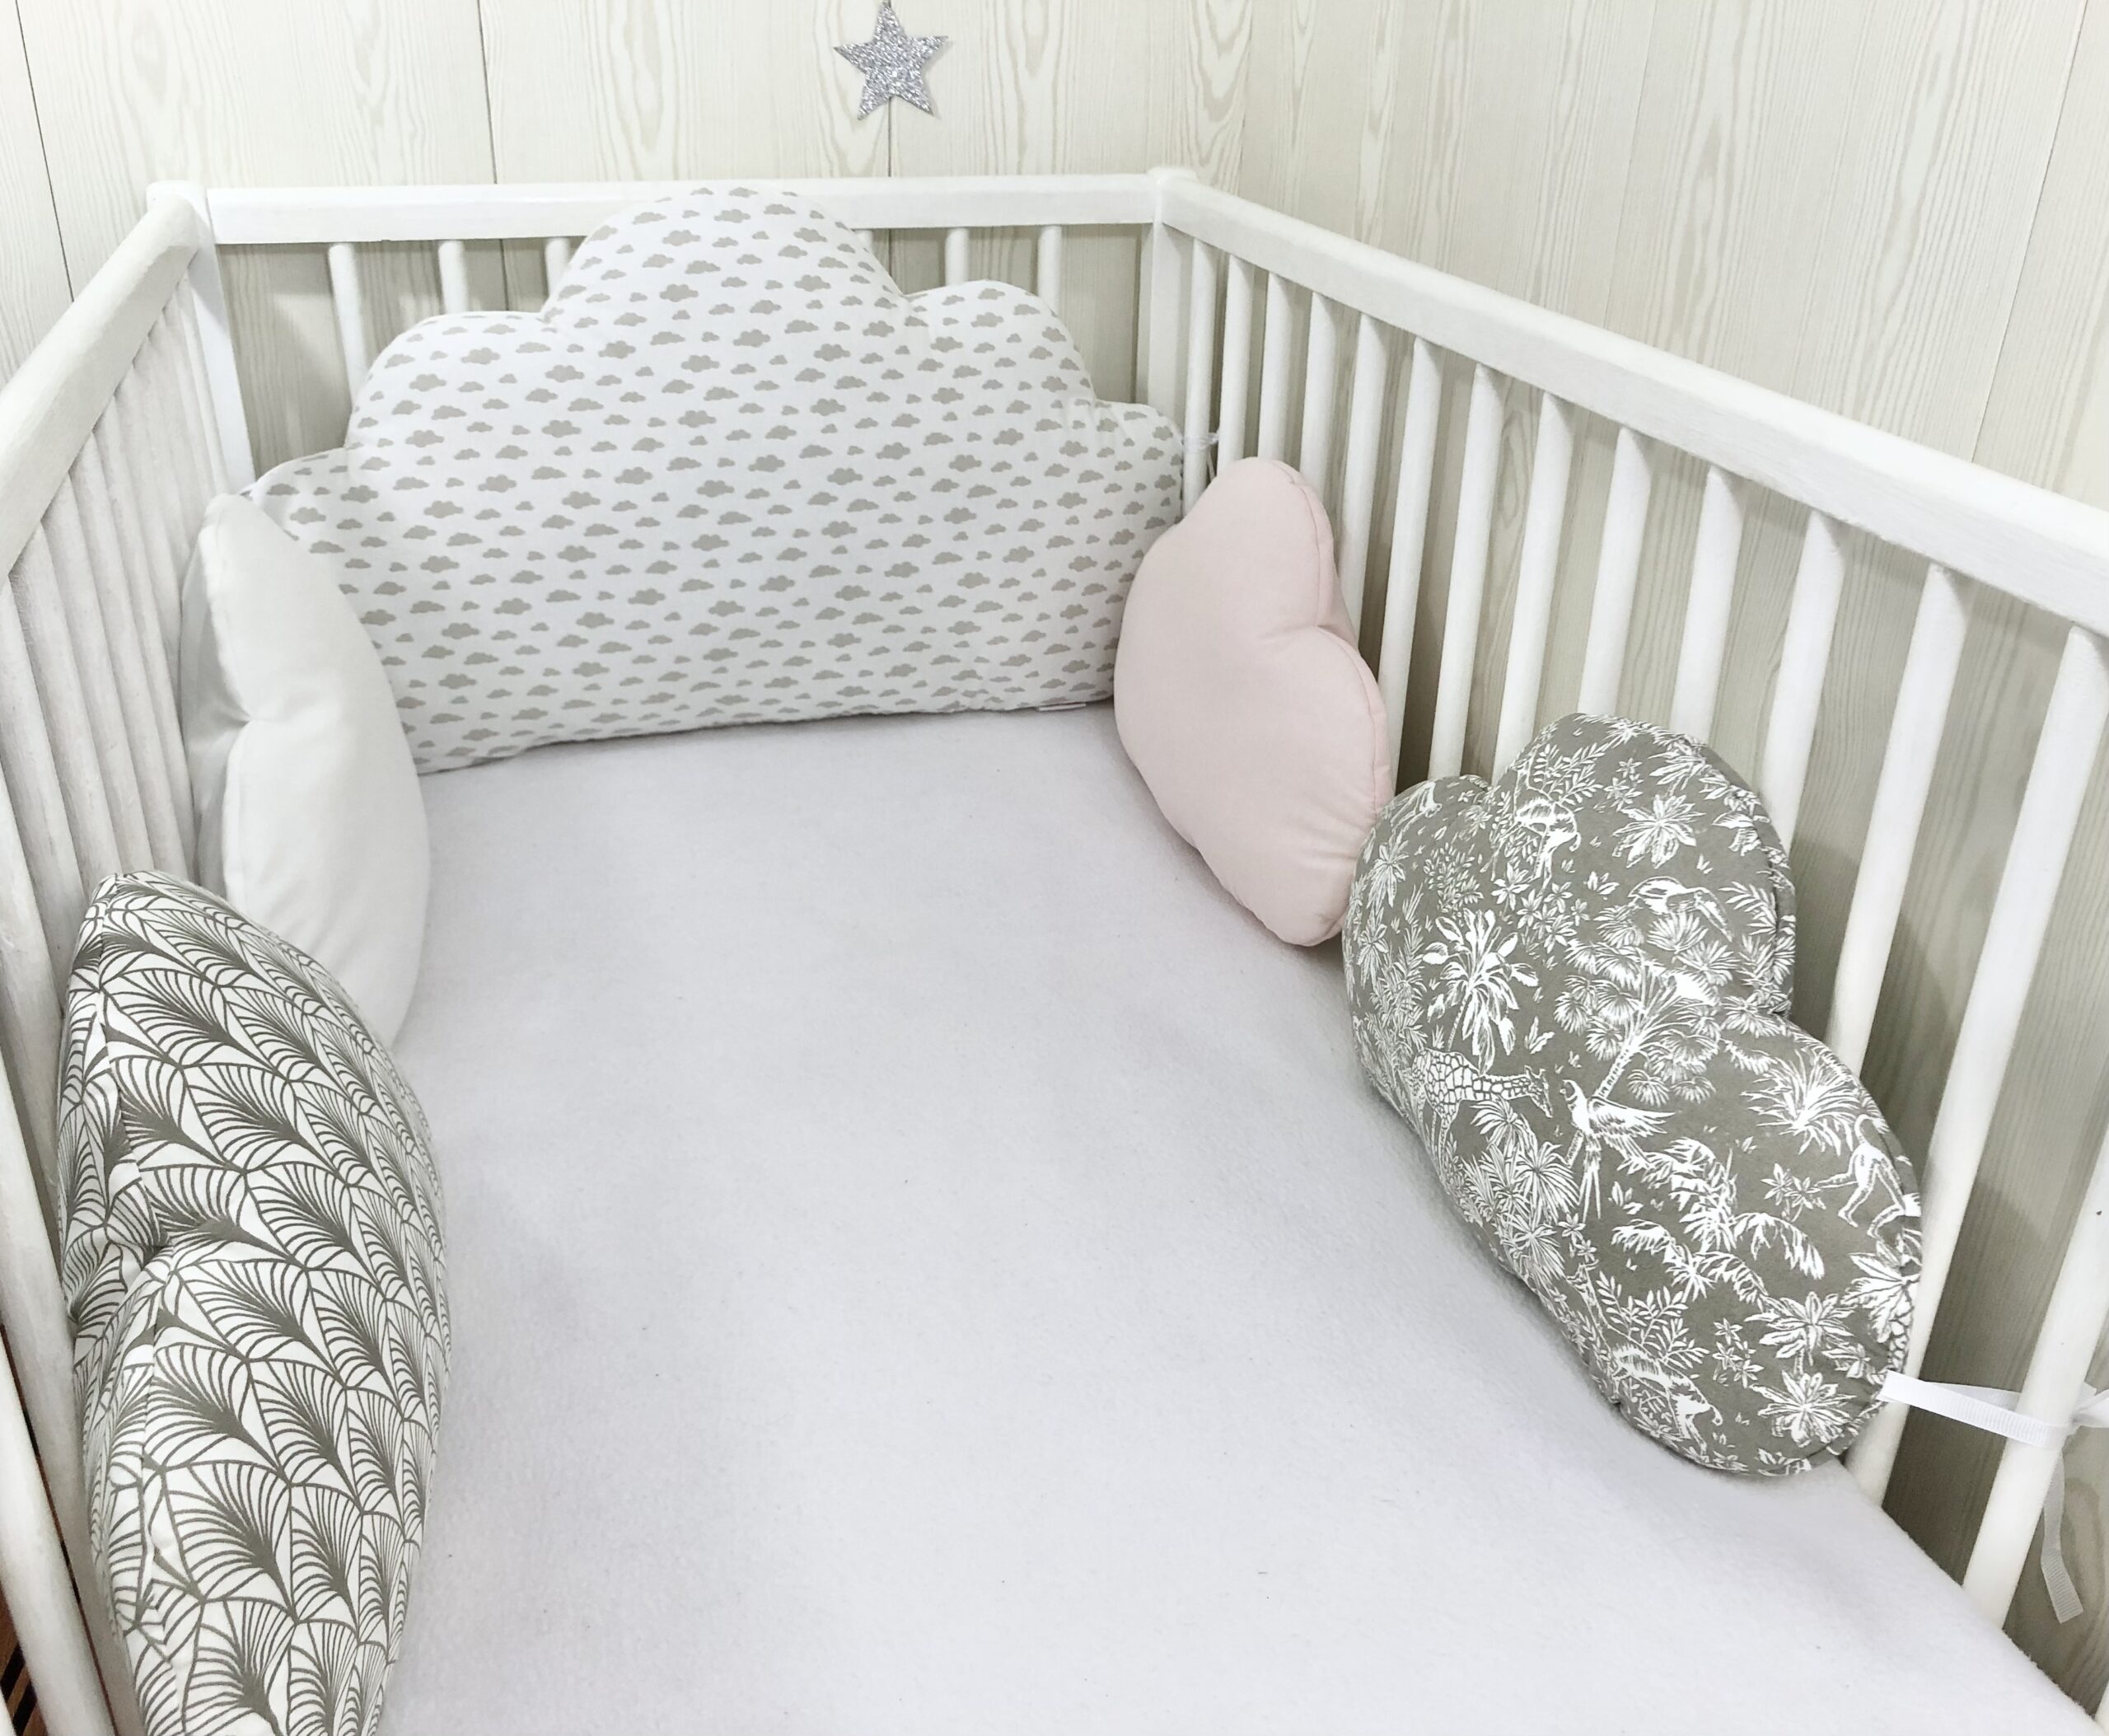 2 Coussins nuages, tour de lit bébé, blanc, rose et doré